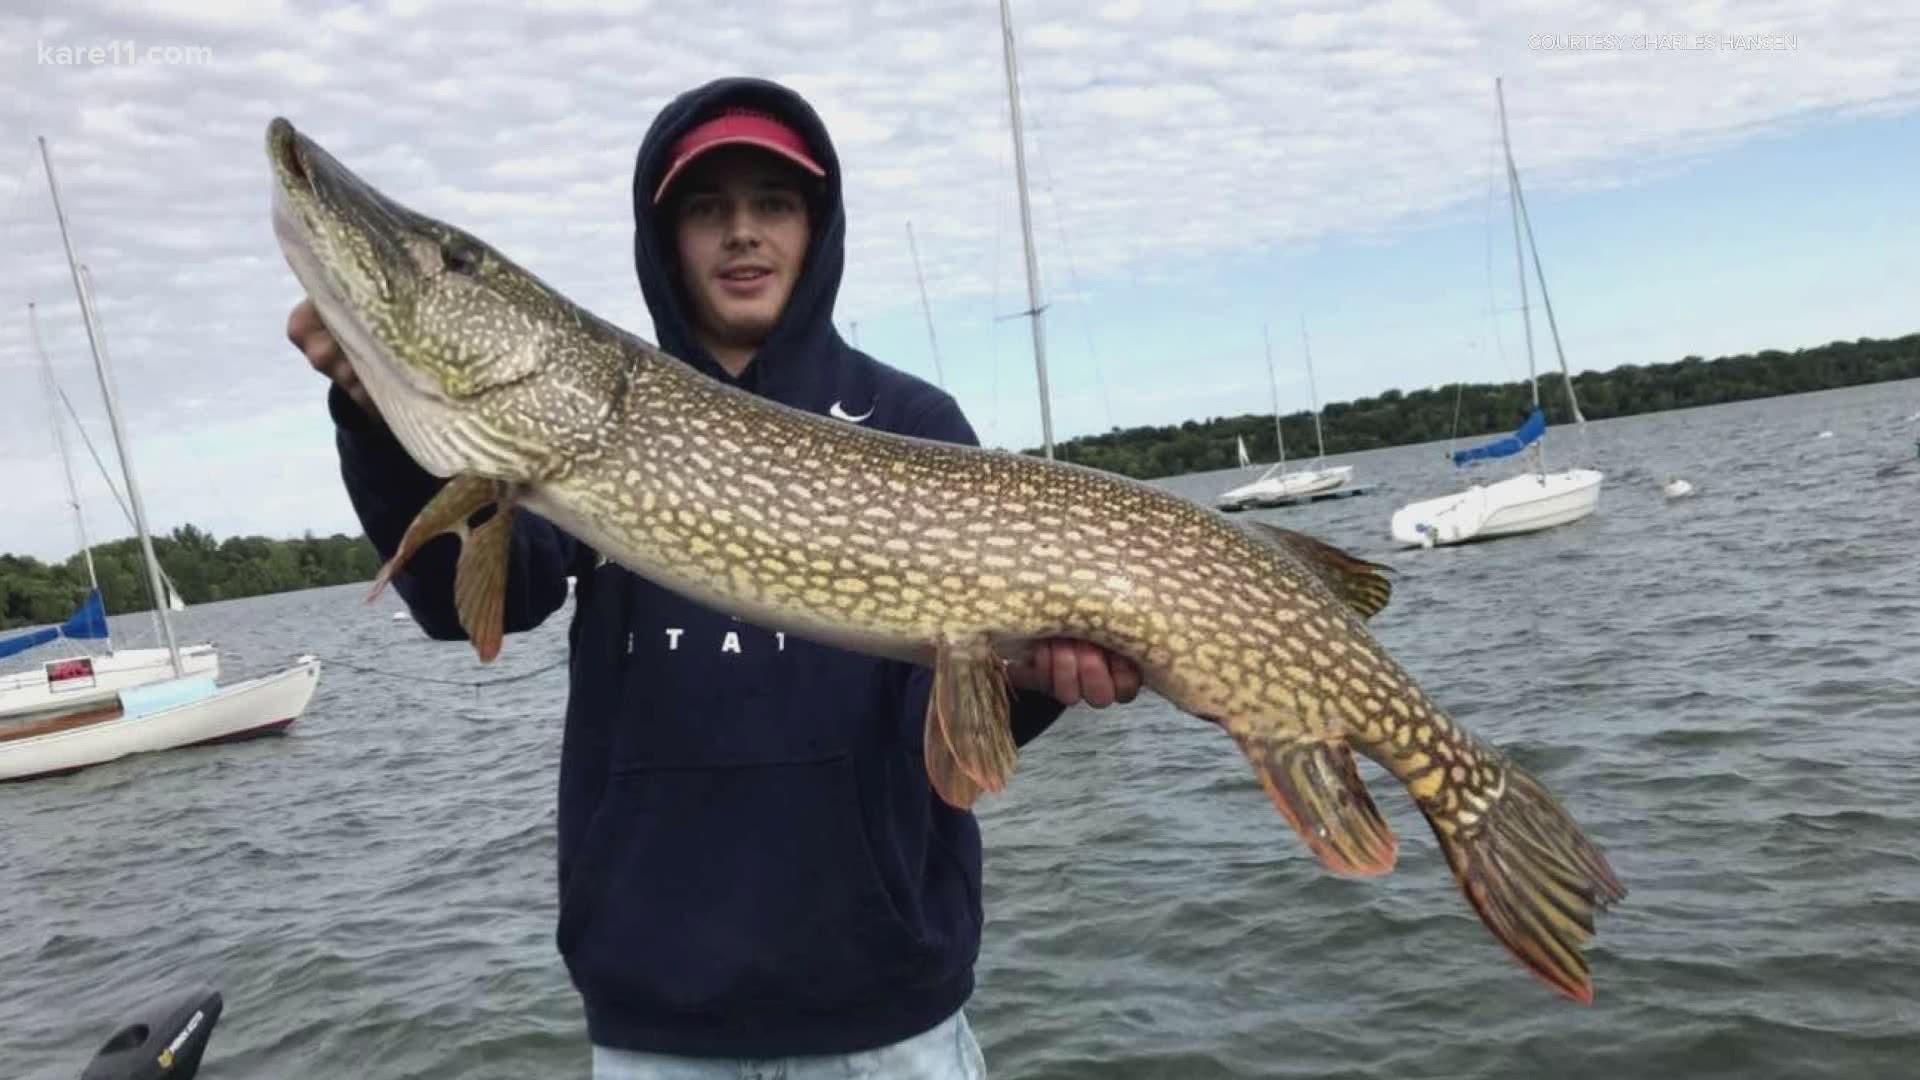 Teen angler reels in monster pike on Lake Harriet